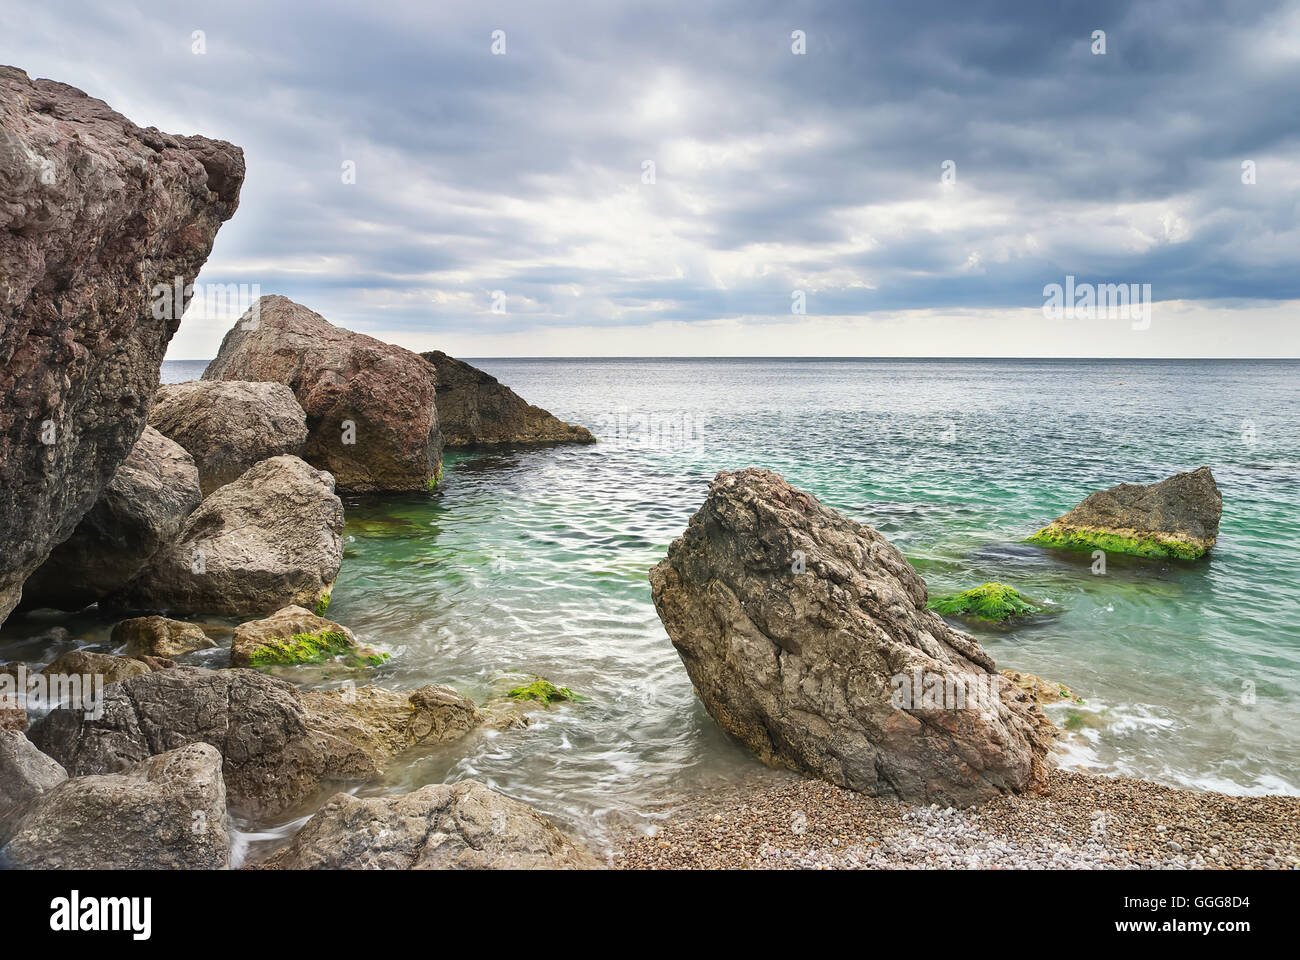 Meeresküste mit großen Felsen. Schöne Seenlandschaft. Natur-Zusammensetzung Stockfoto